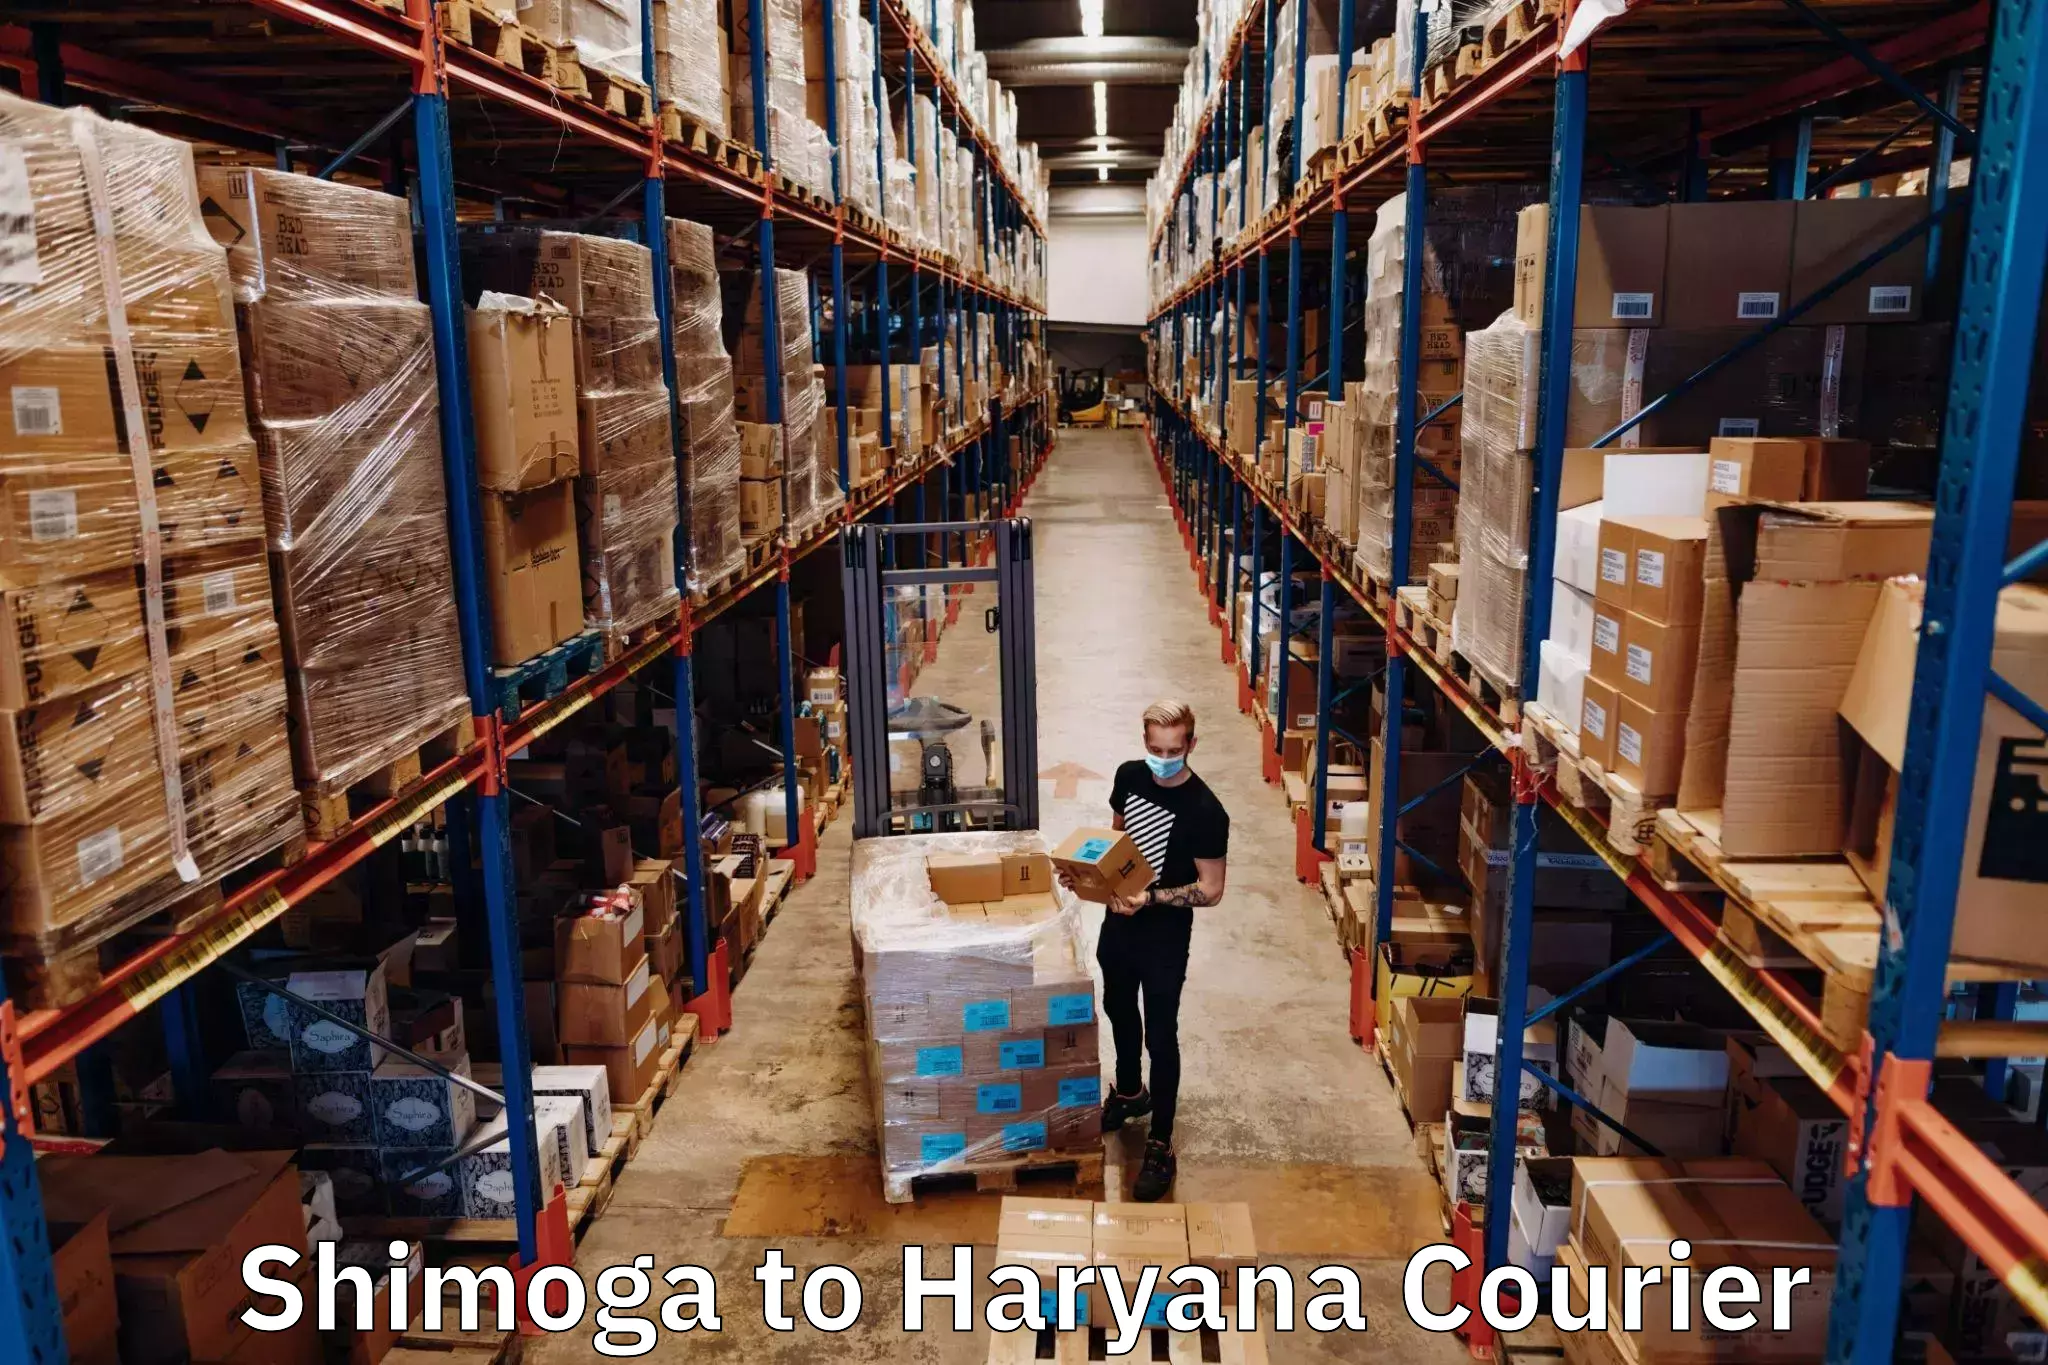 Global shipping networks Shimoga to NCR Haryana